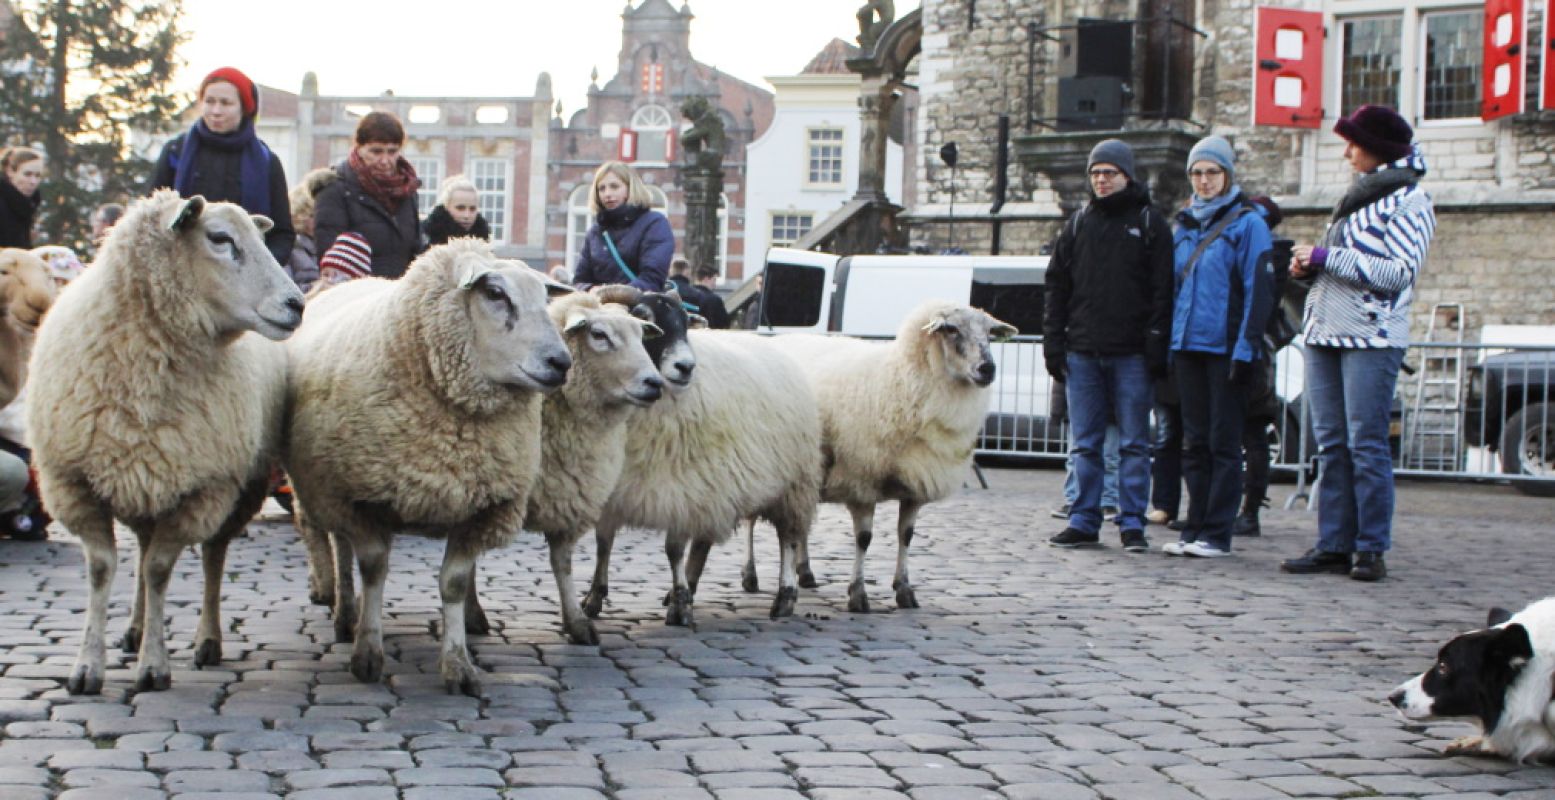 De schapen zijn onderweg naar de levende kerststal. Foto: Astrid den Haan.